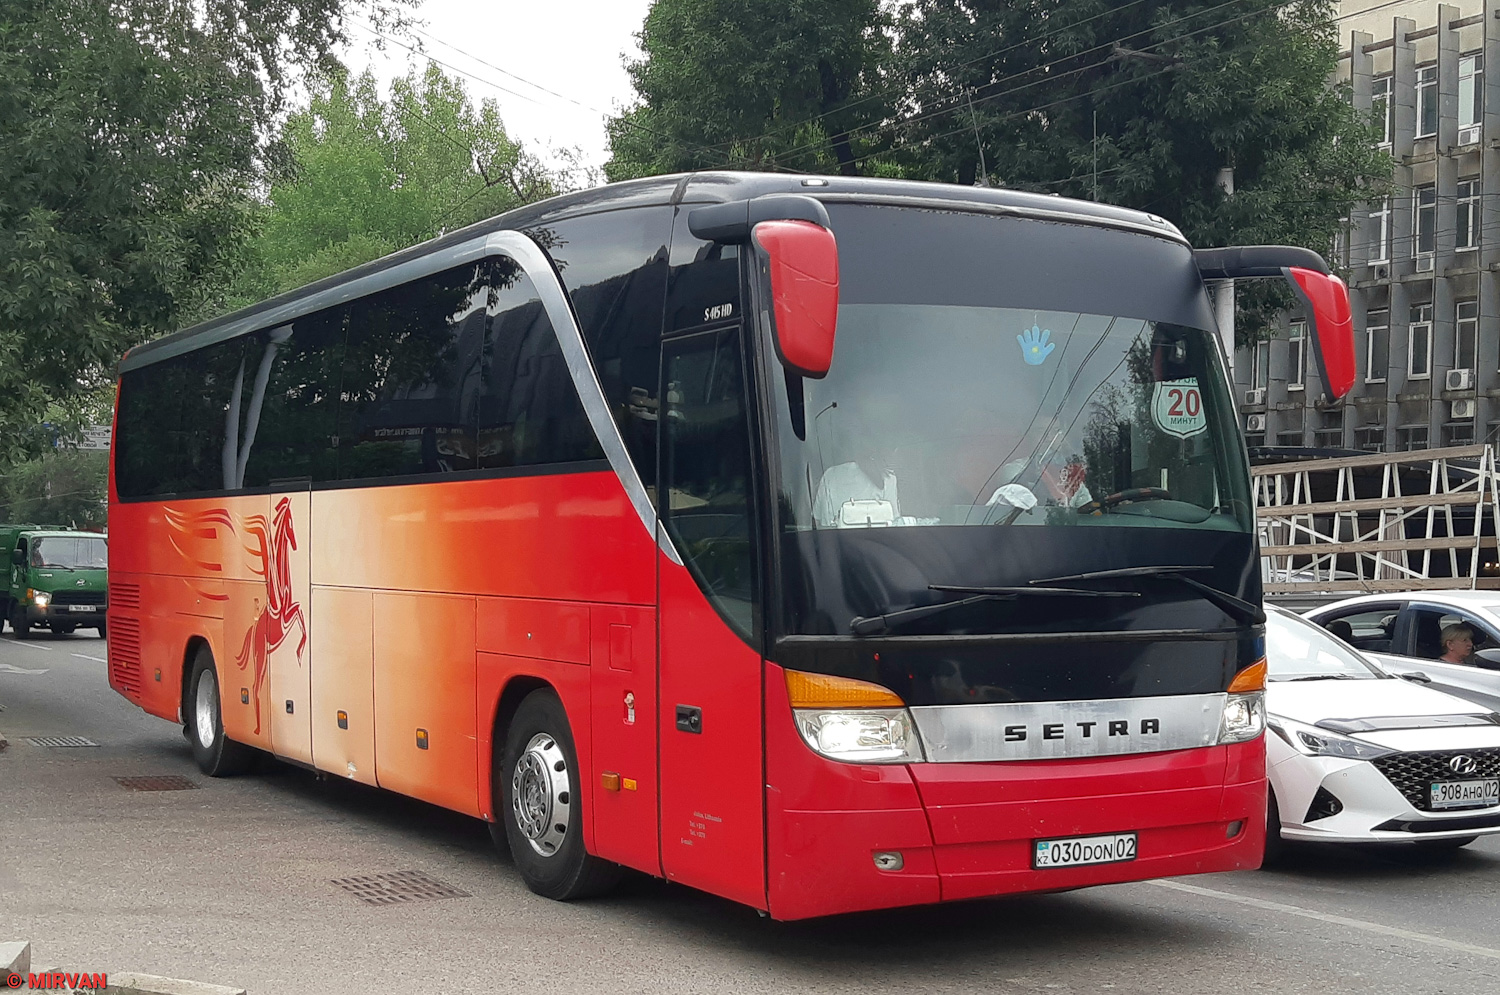 Almaty, Setra S415HD nr. 030 DON 02